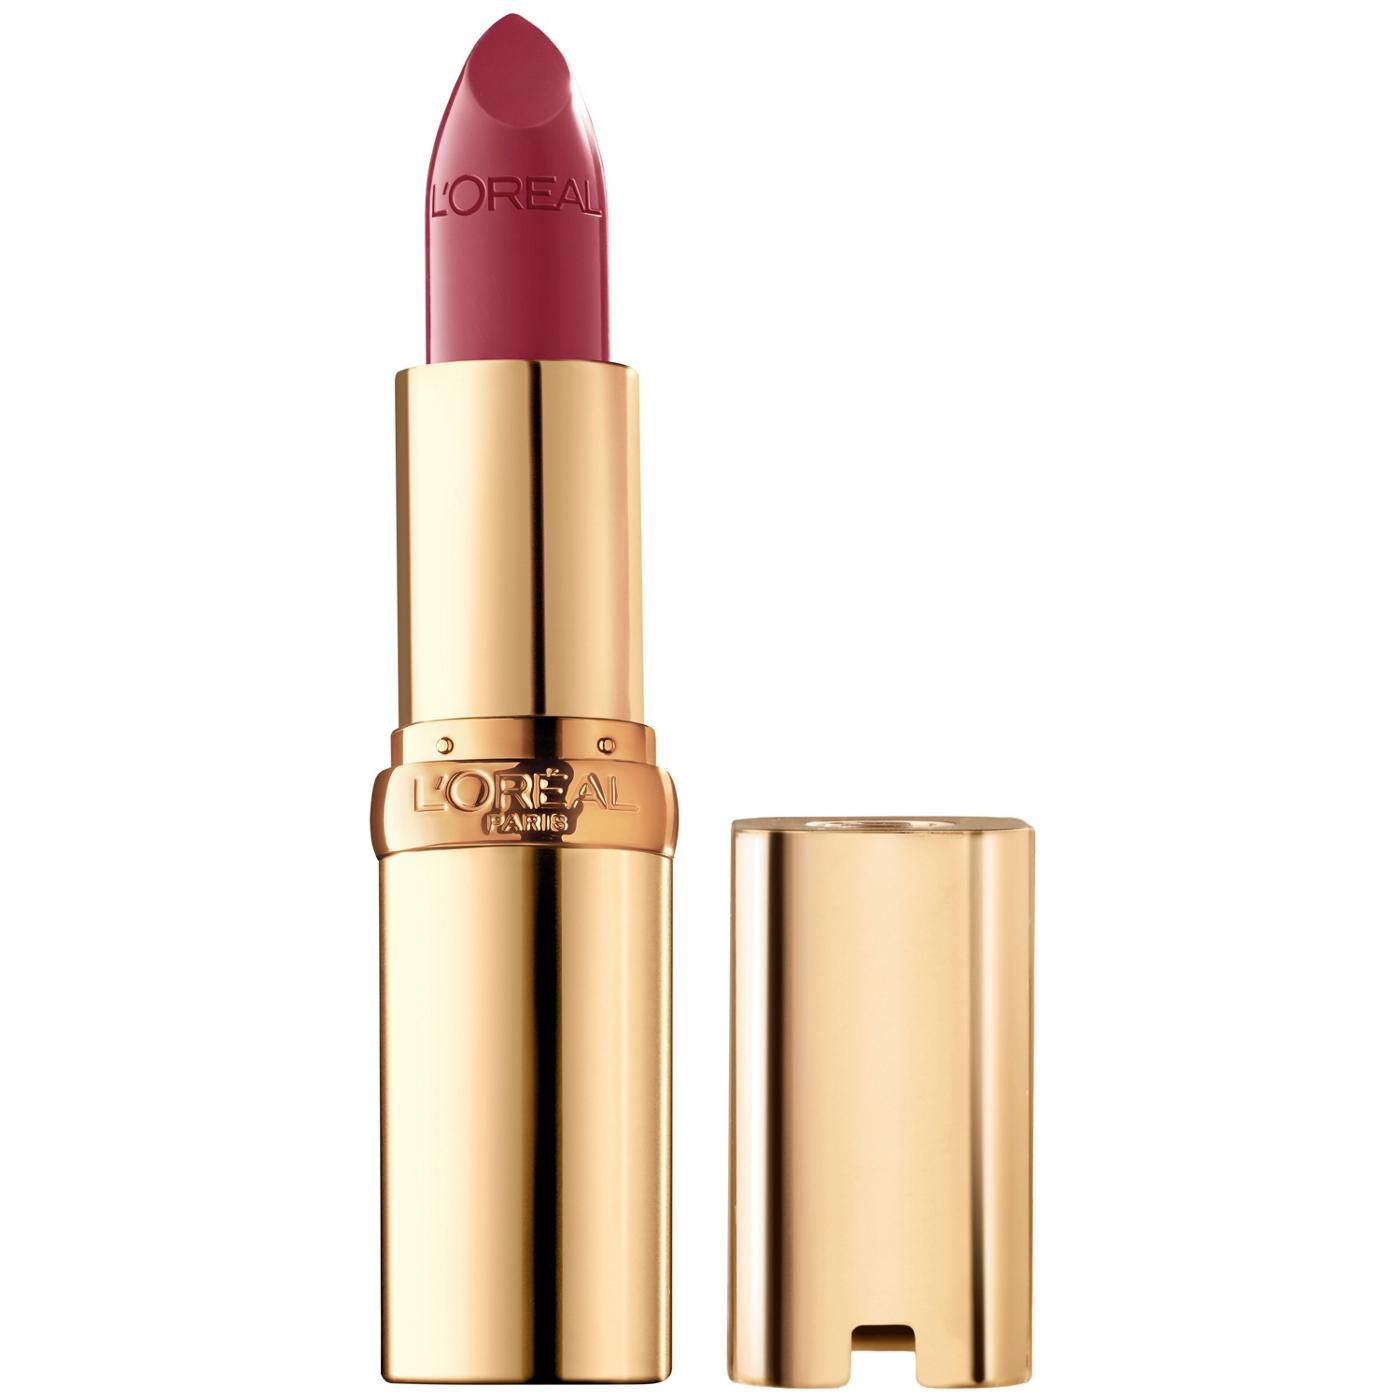 L'Oréal Paris Colour Riche Original Satin Lipstick - Berry Parisienne; image 1 of 2